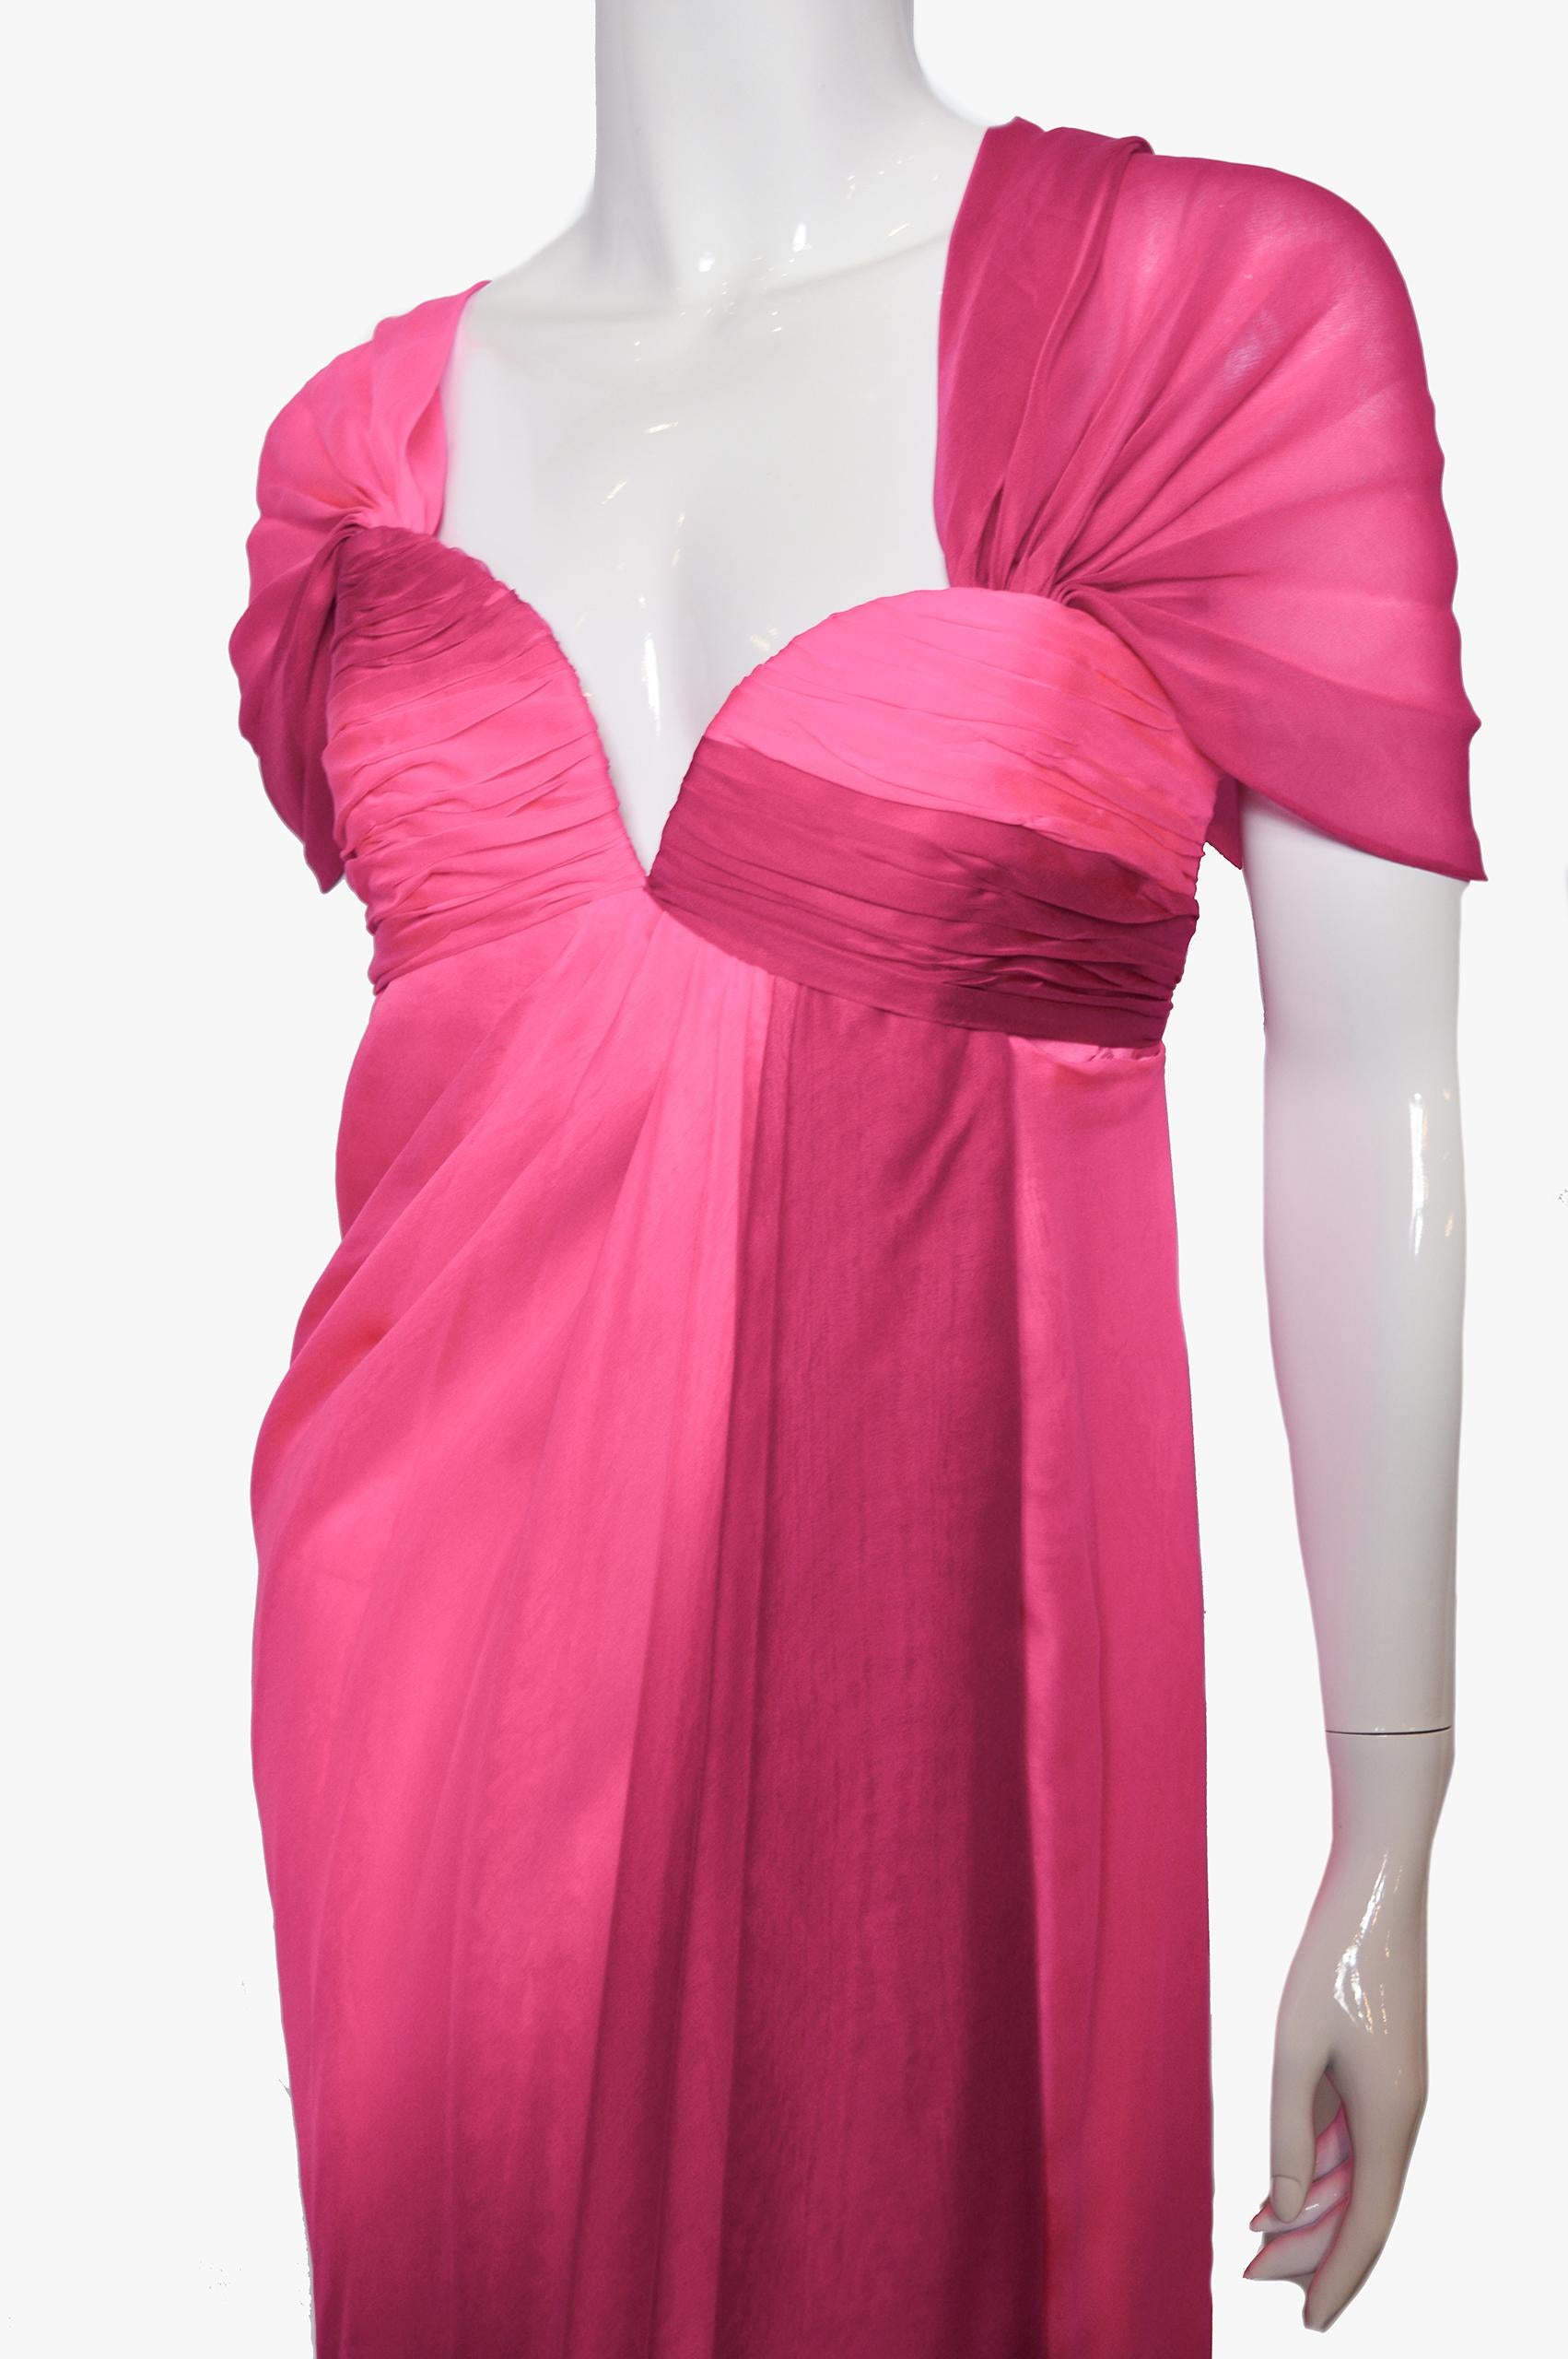 Une superbe robe de soirée vintage en soie de Odicini Couture des années 1980.

Le corsage de la robe est composé d'attelles avec un décolleté profond en forme de cœur, avec une fermeture à glissière métallique sur le côté.
Le corsage est doté d'une